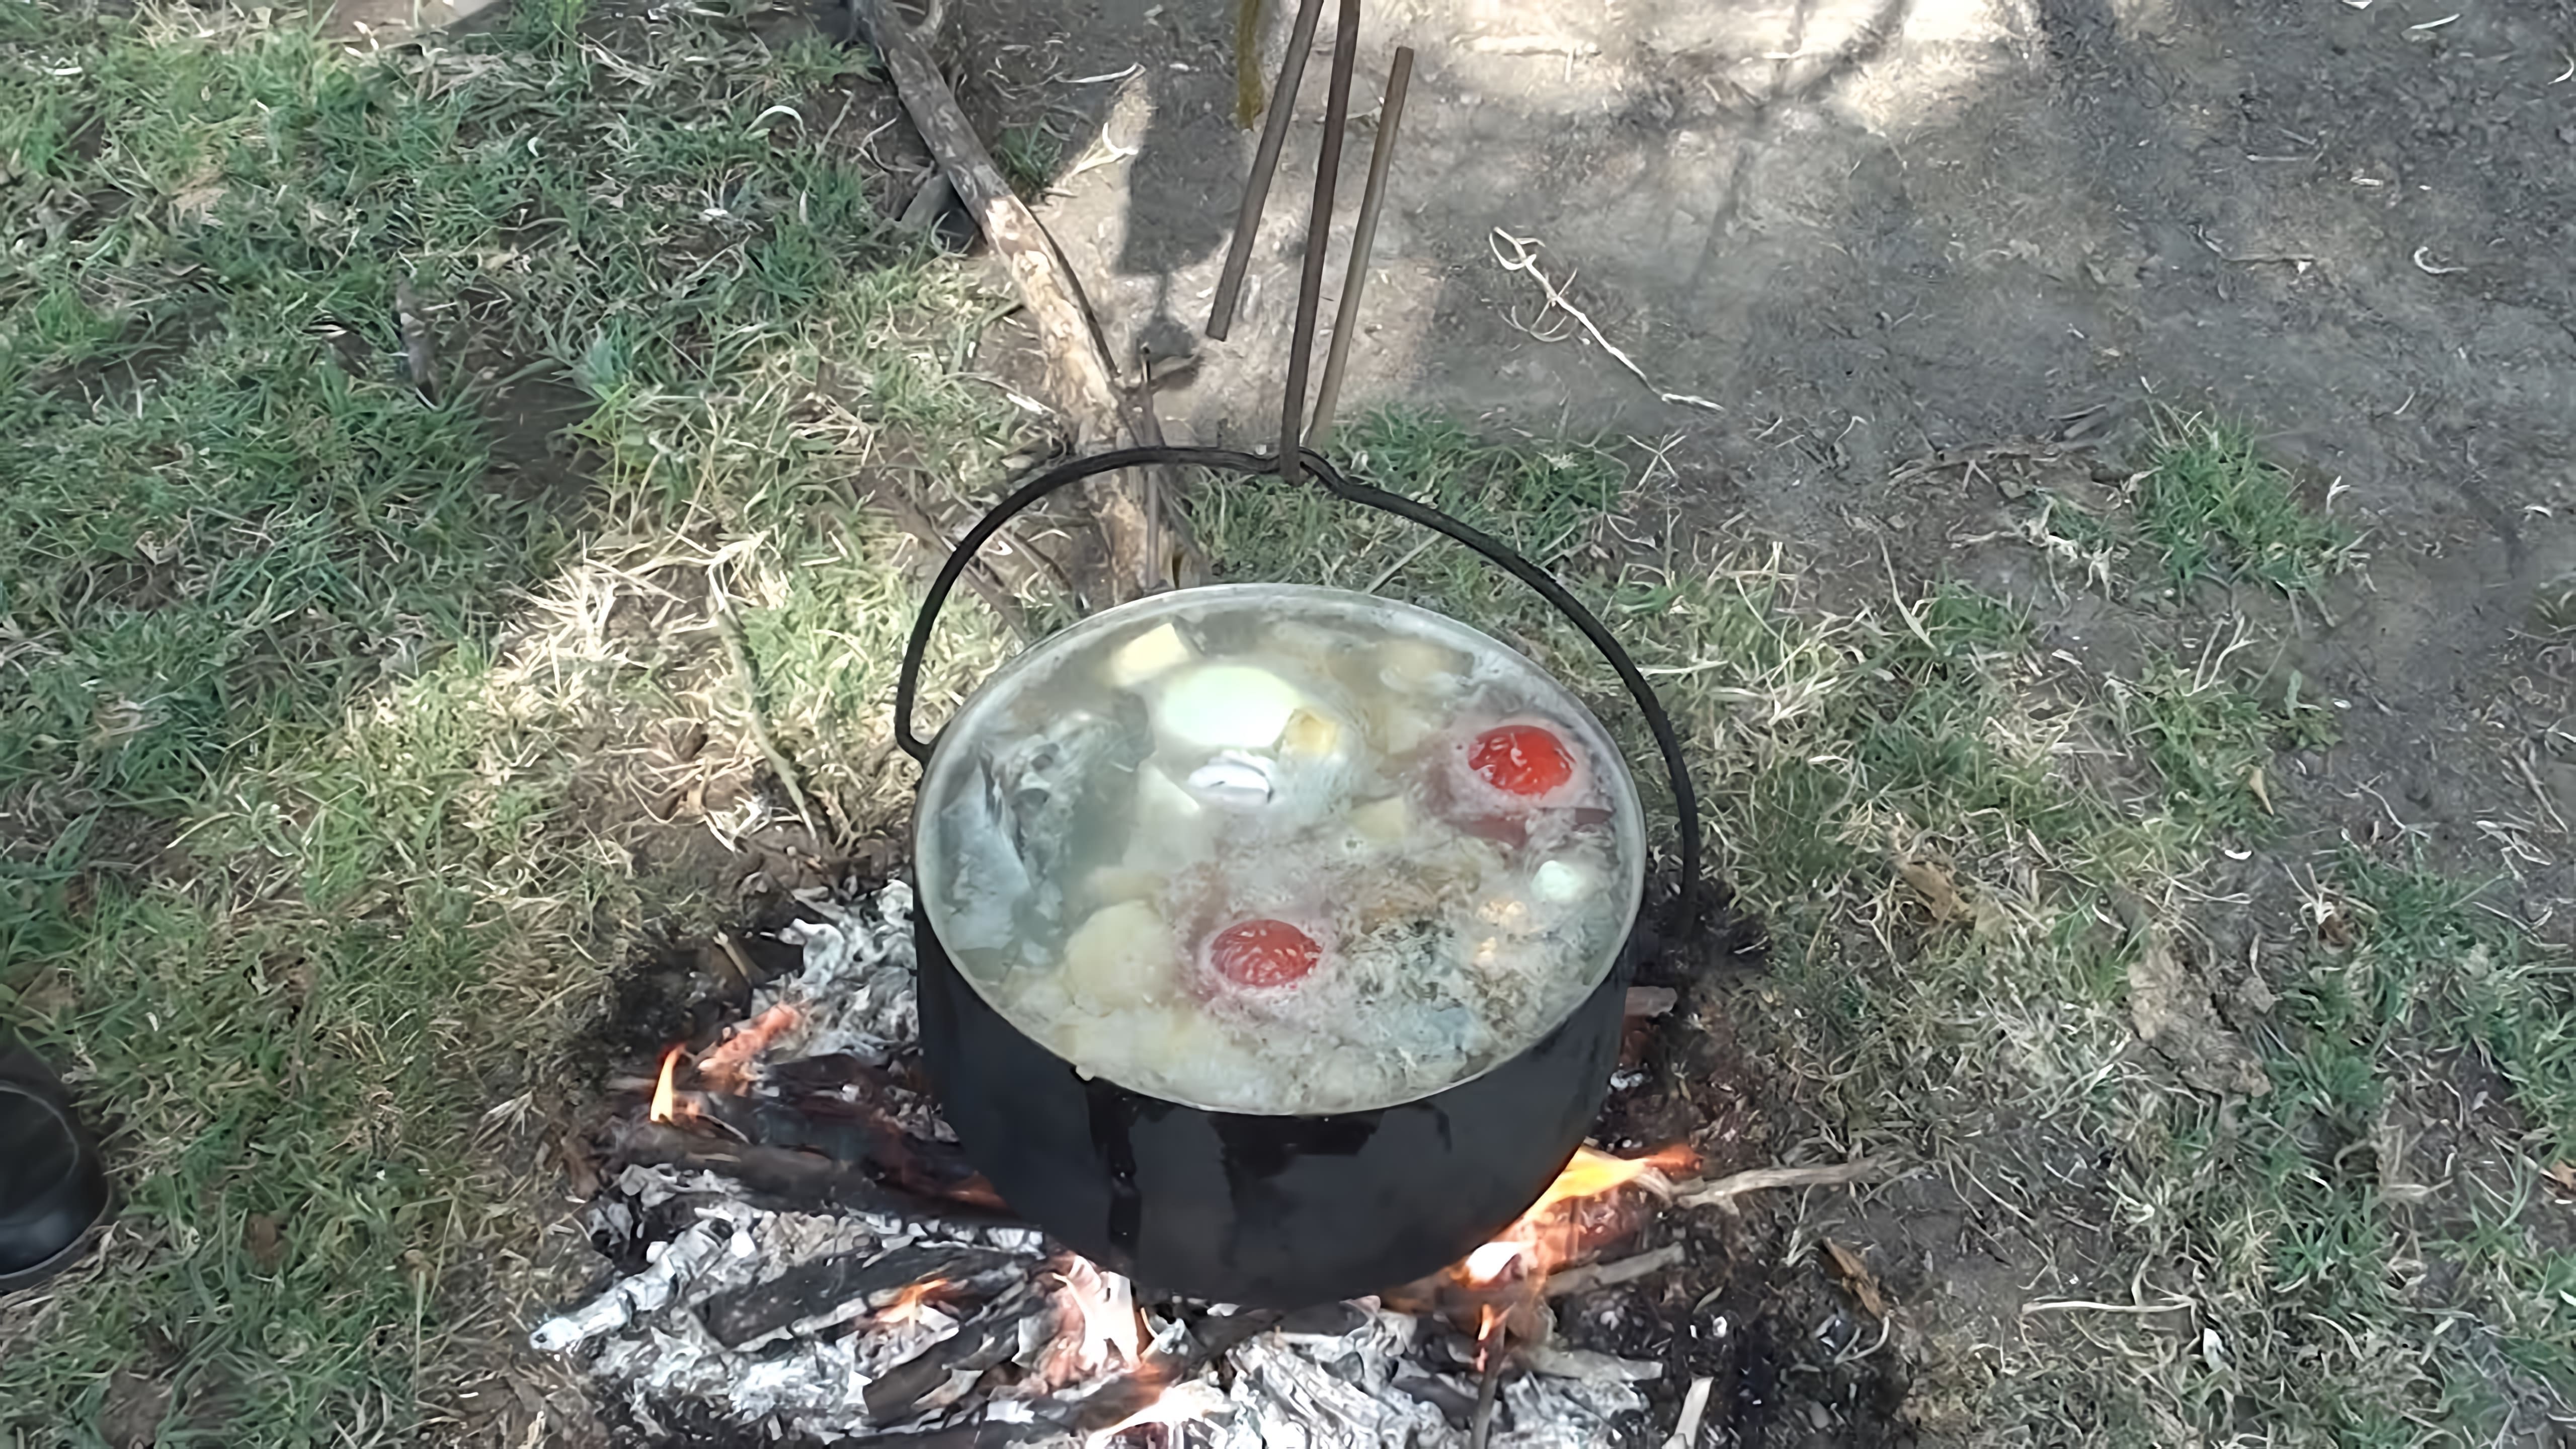 В этом видео демонстрируется процесс приготовления ухи из сома и сазана по рецепту егеря из Астрахани